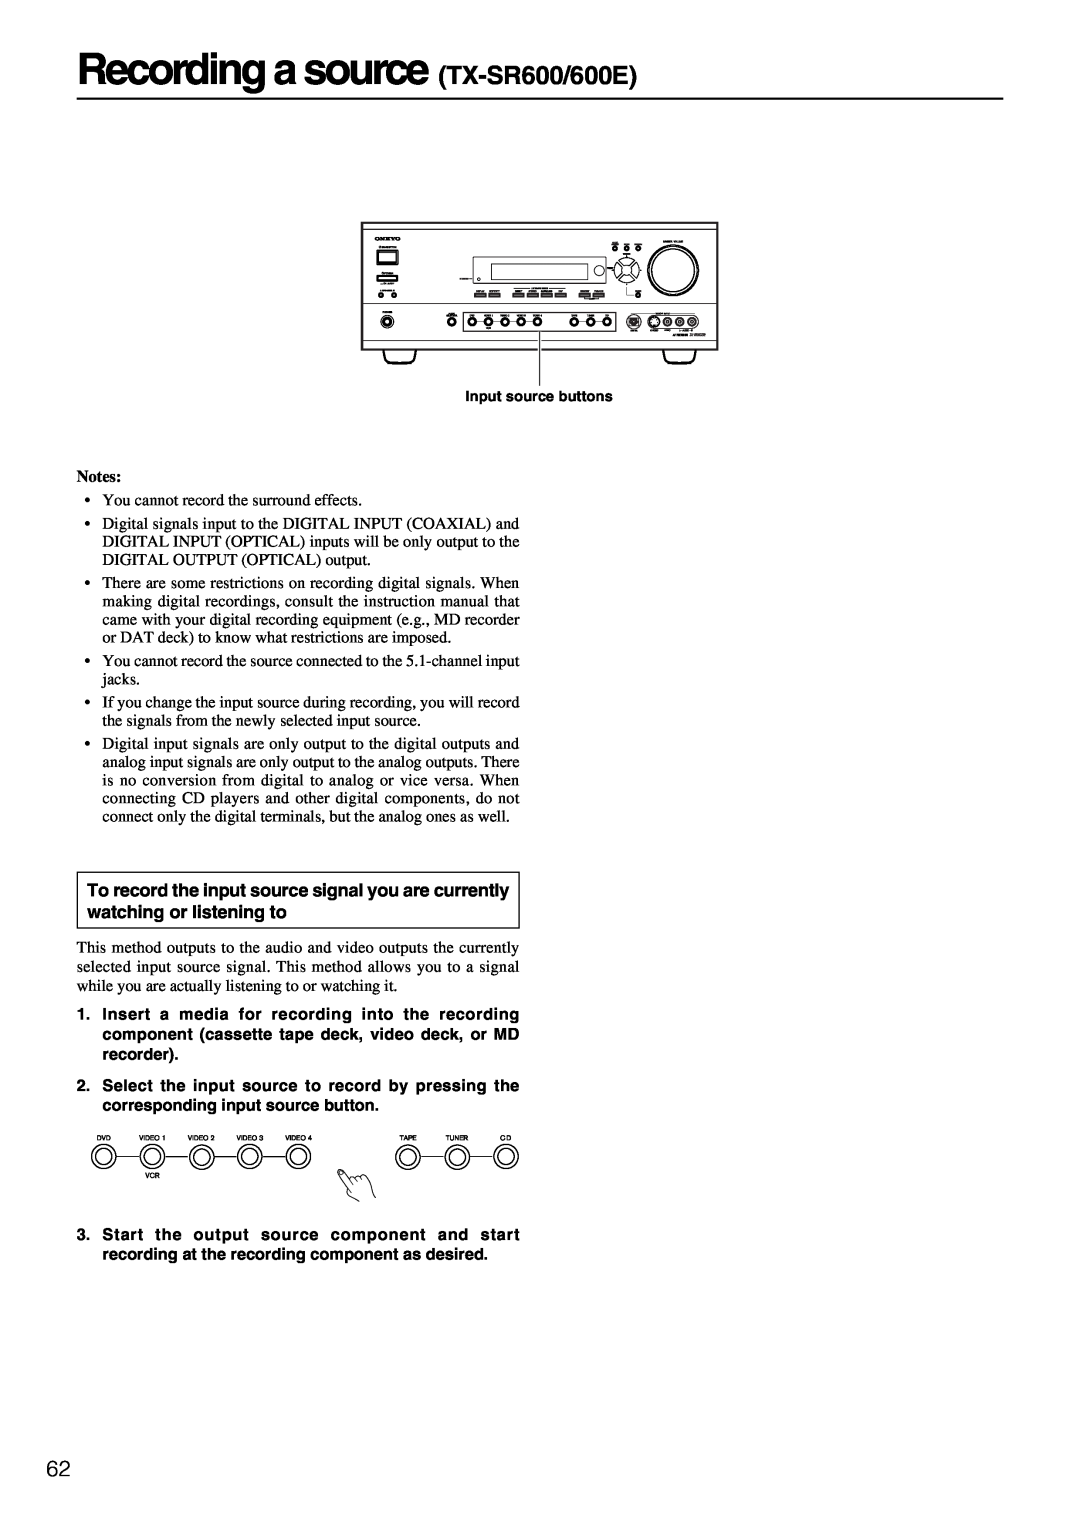 Onkyo TX-SR700/700E instruction manual Recording a source TX-SR600/600E, Notes 